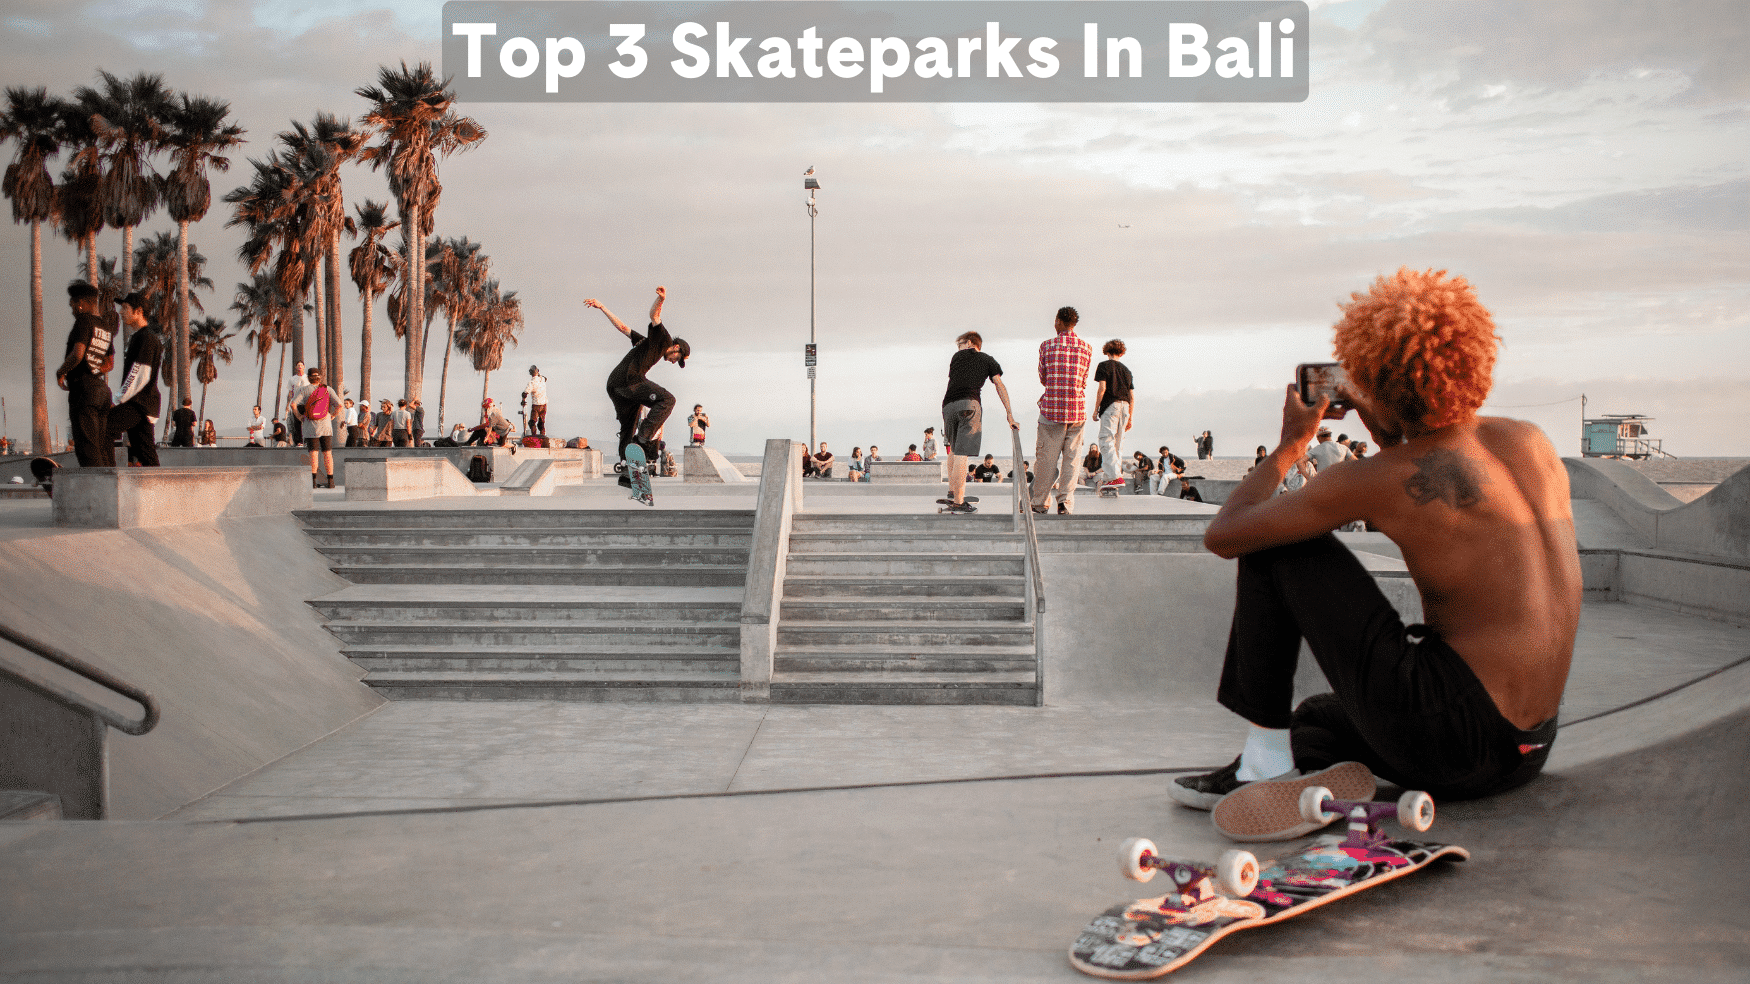 Top 3 Skateparks In Bali